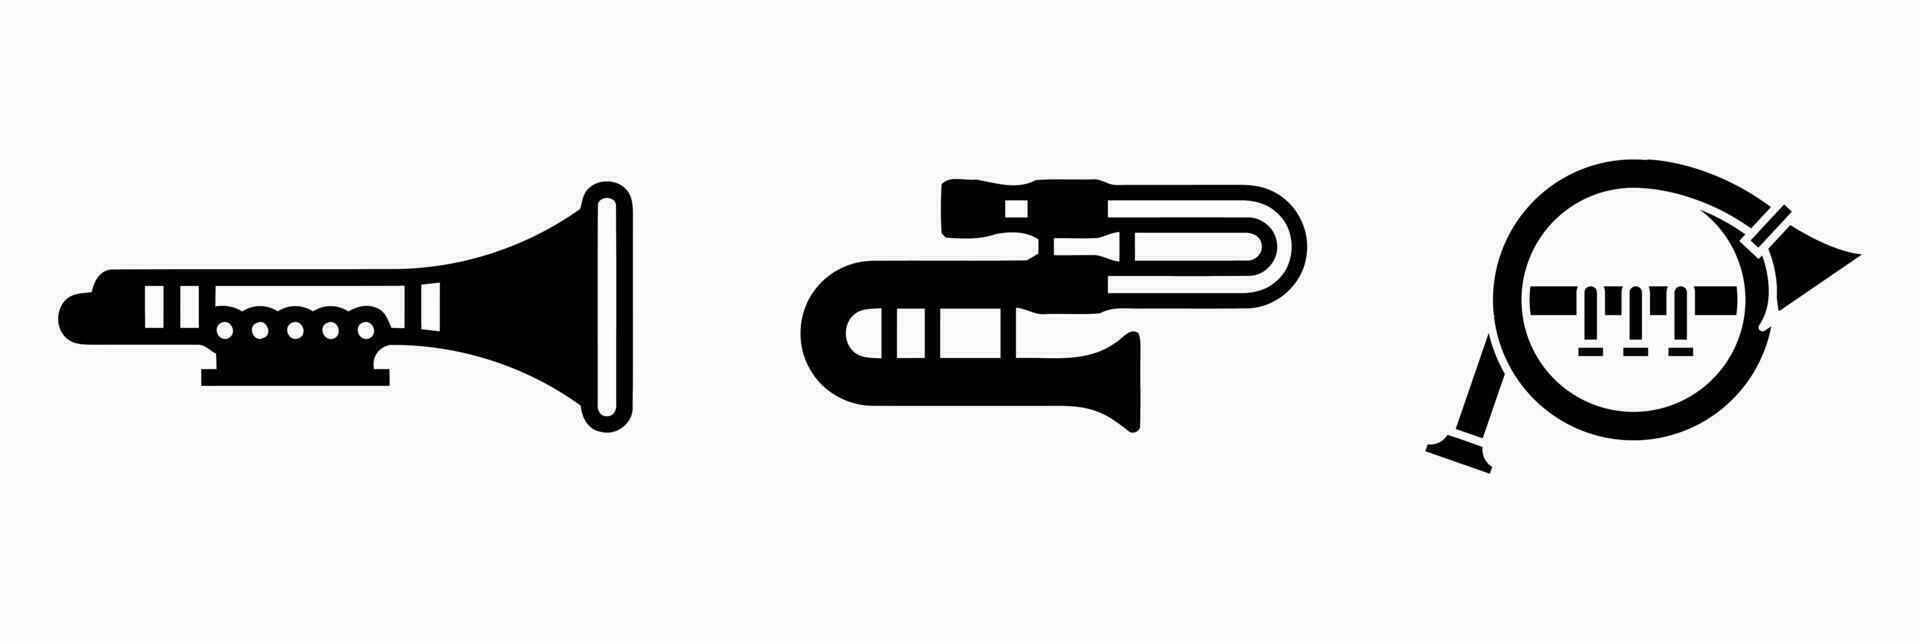 Trompete Symbol Satz. Trompete schwarz und Weiß Illustration. Lager Vektor. vektor